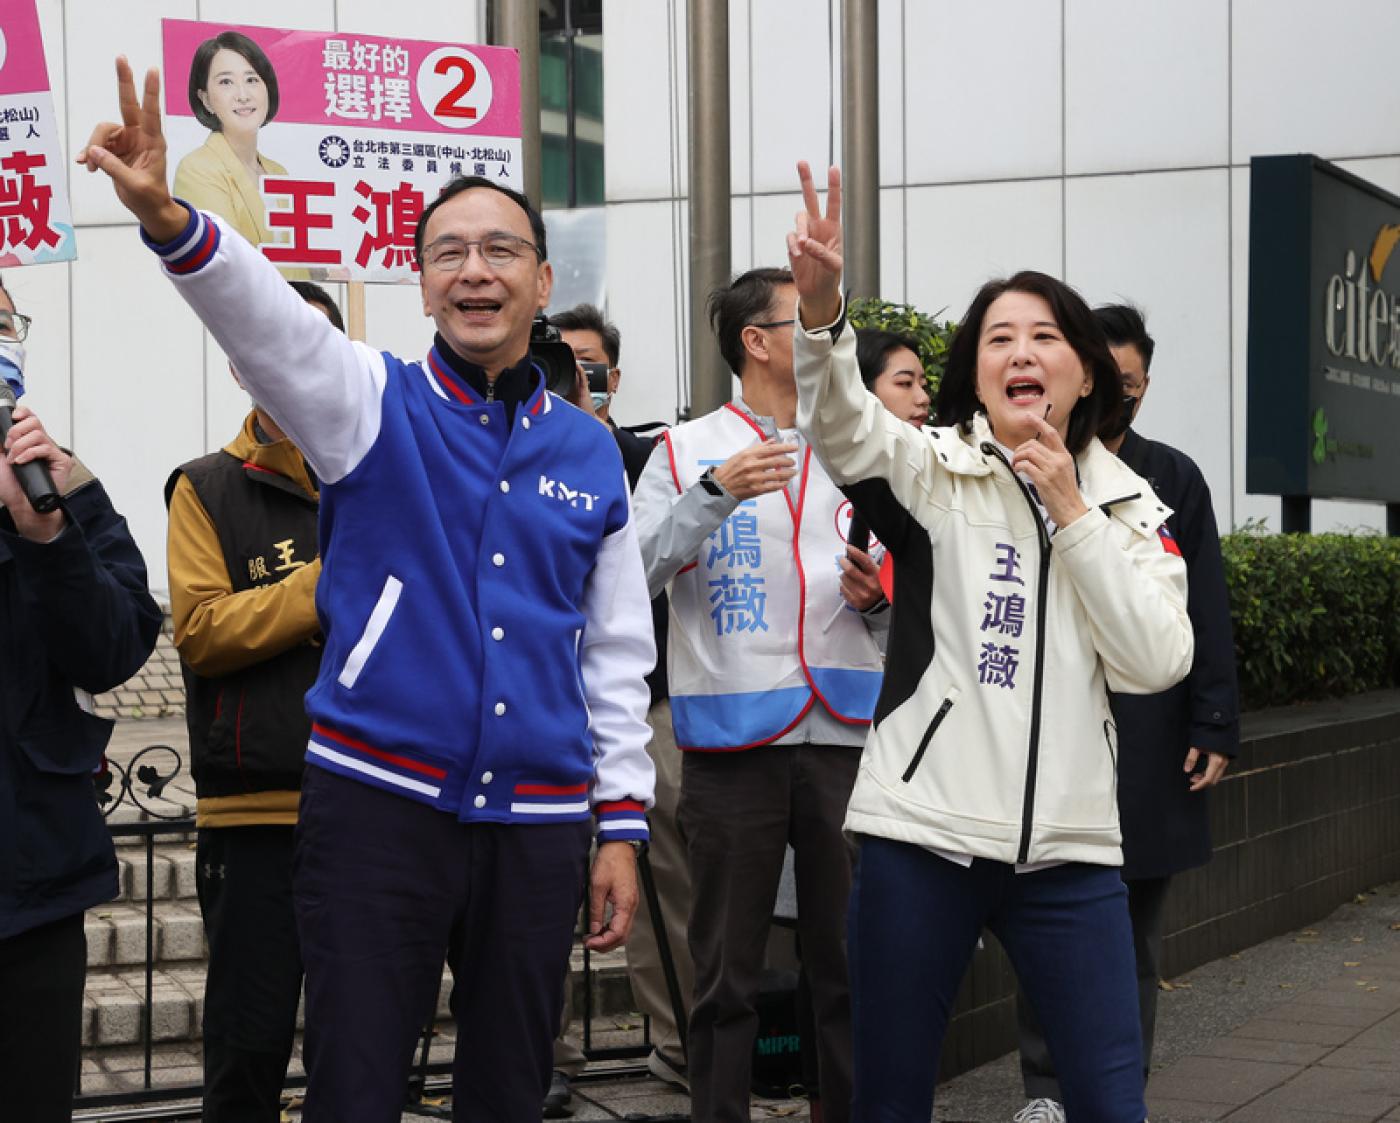 國民黨主席朱立倫上午與北市立委補選候選人王鴻薇在松江路口拜票。中央社